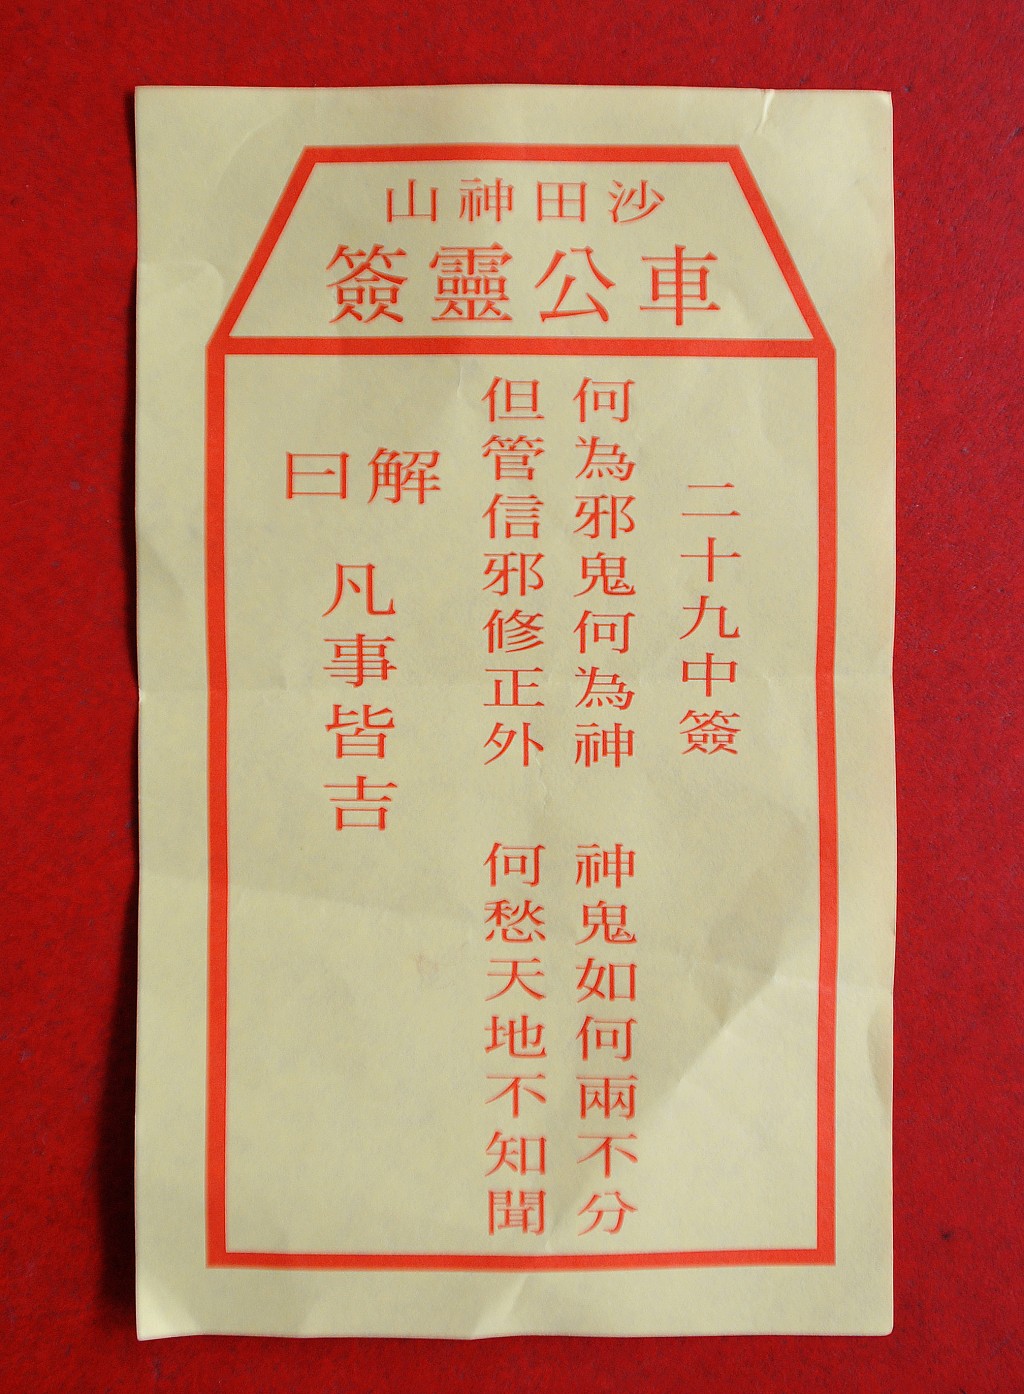 2012年，刘皇发于车公诞参拜求签，求得第29签中签。签文写道：「何为邪鬼何为神，神鬼如何两不分；但管信邪修正外，何愁天地不知闻。」（资料图片）